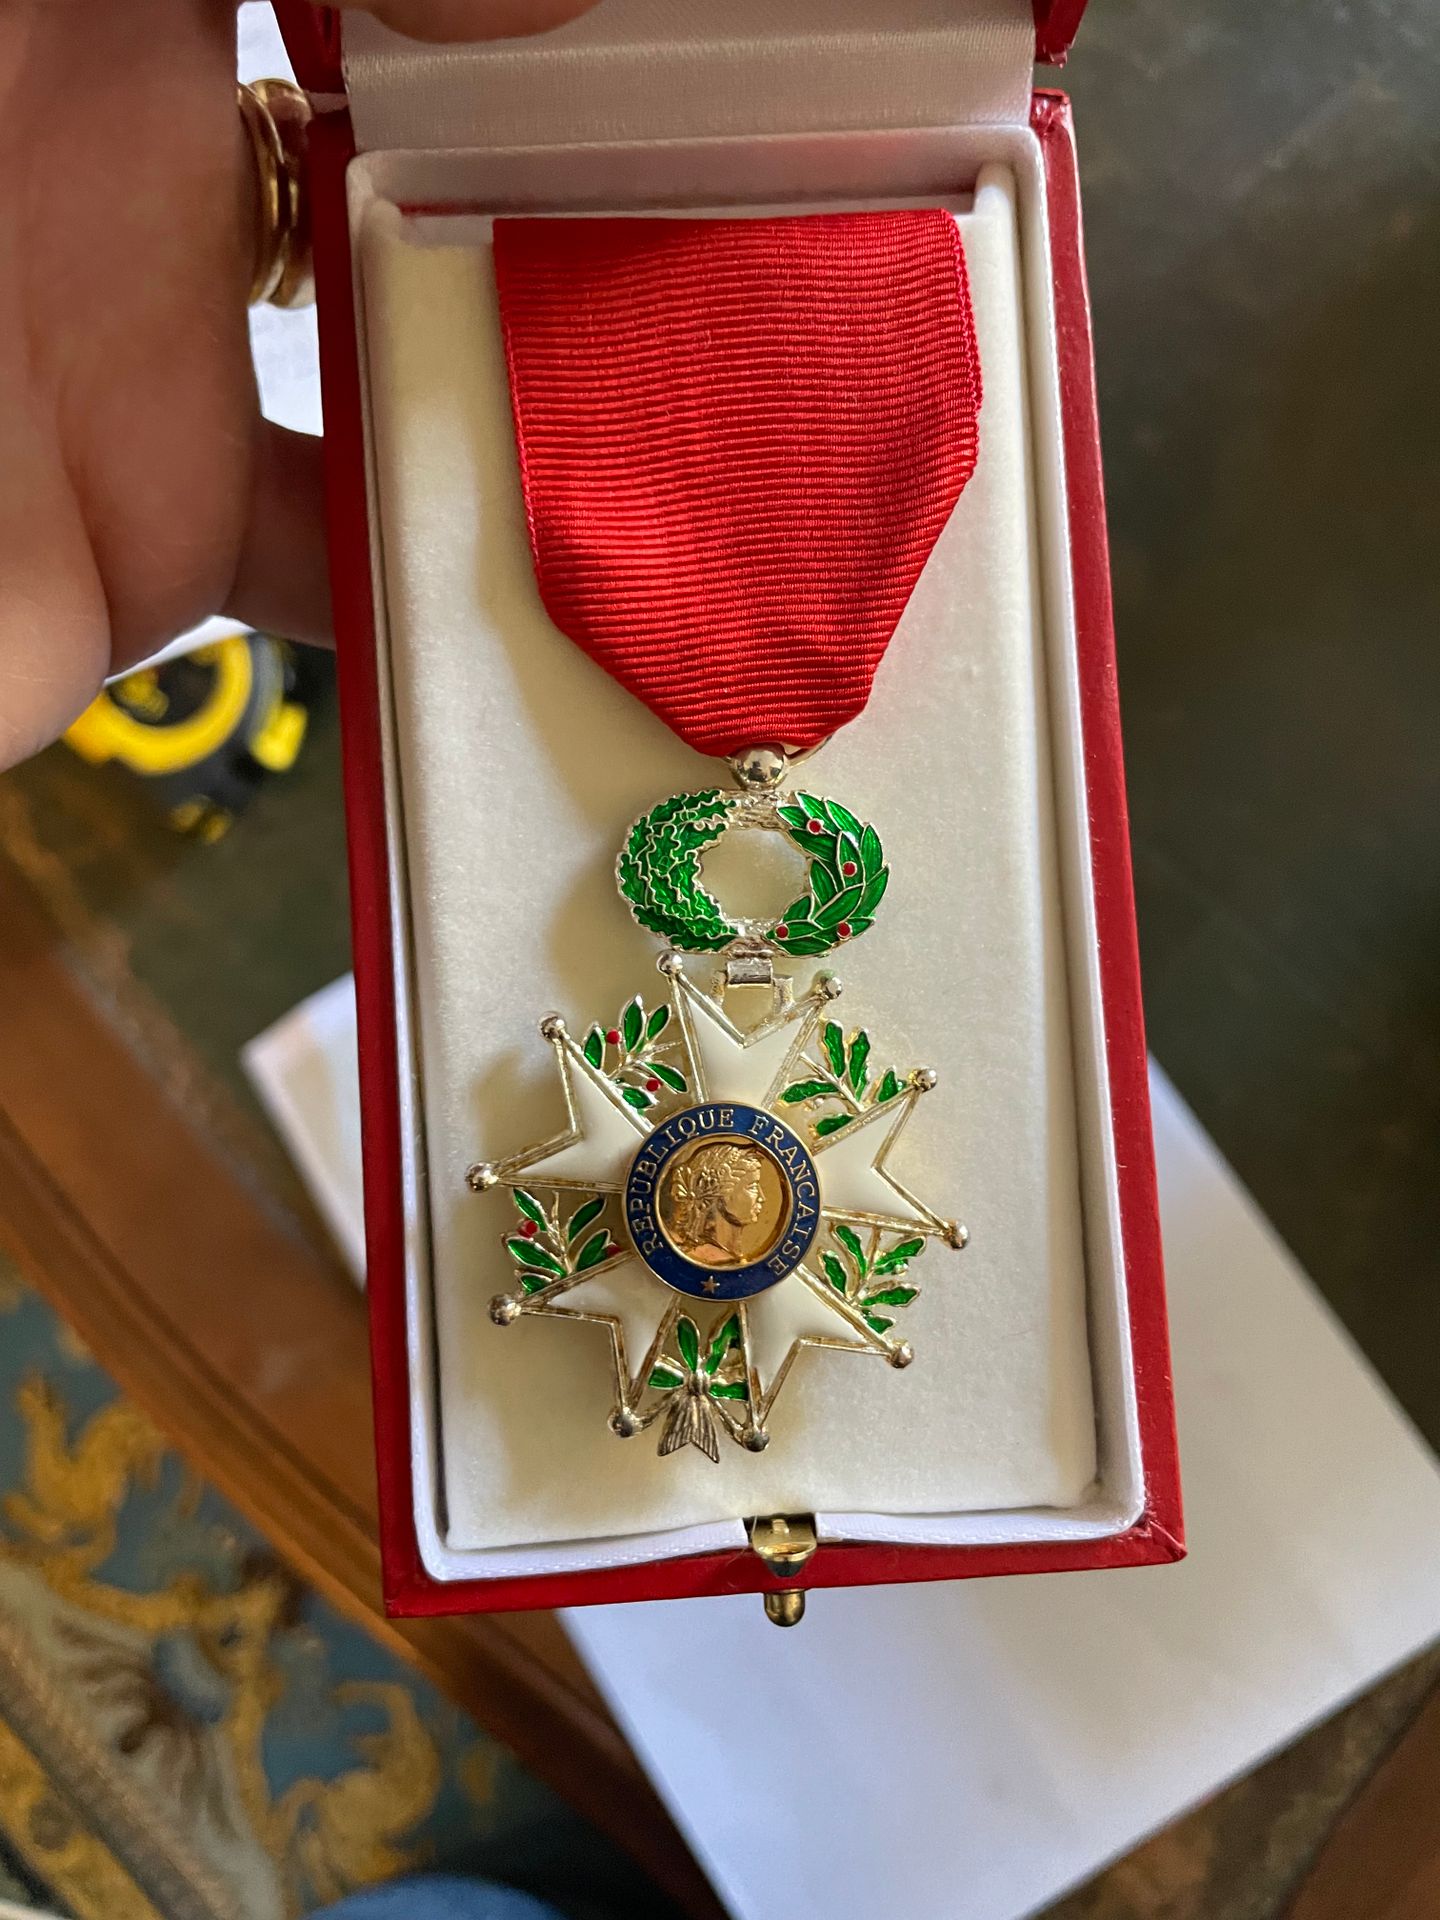 Null 国家荣誉军团骑士勋章
第四共和国
附上一小批军事奖章